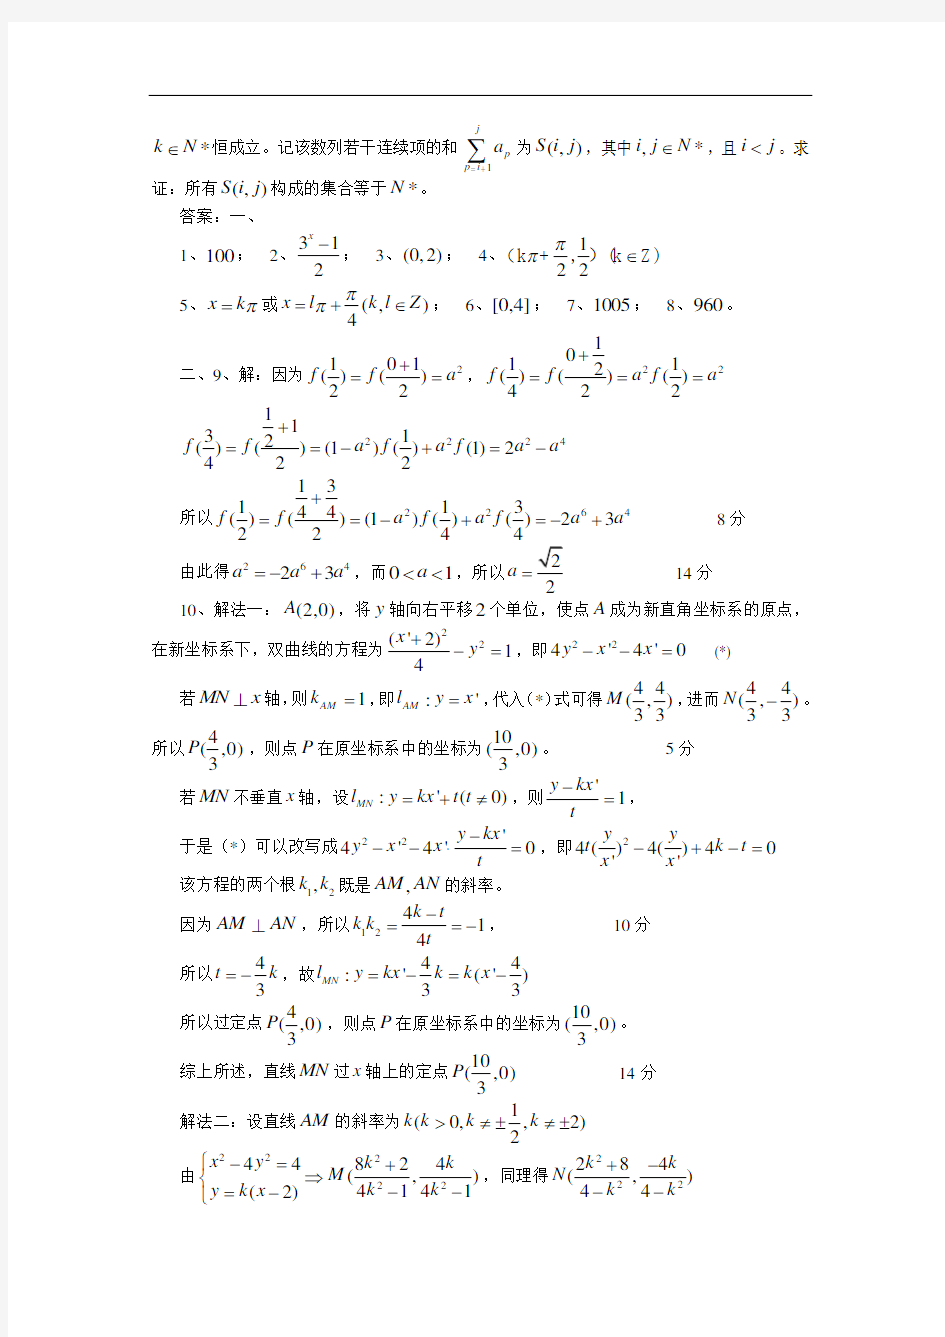 2019年上海市高中数学竞赛(新知杯)试题(附解答)